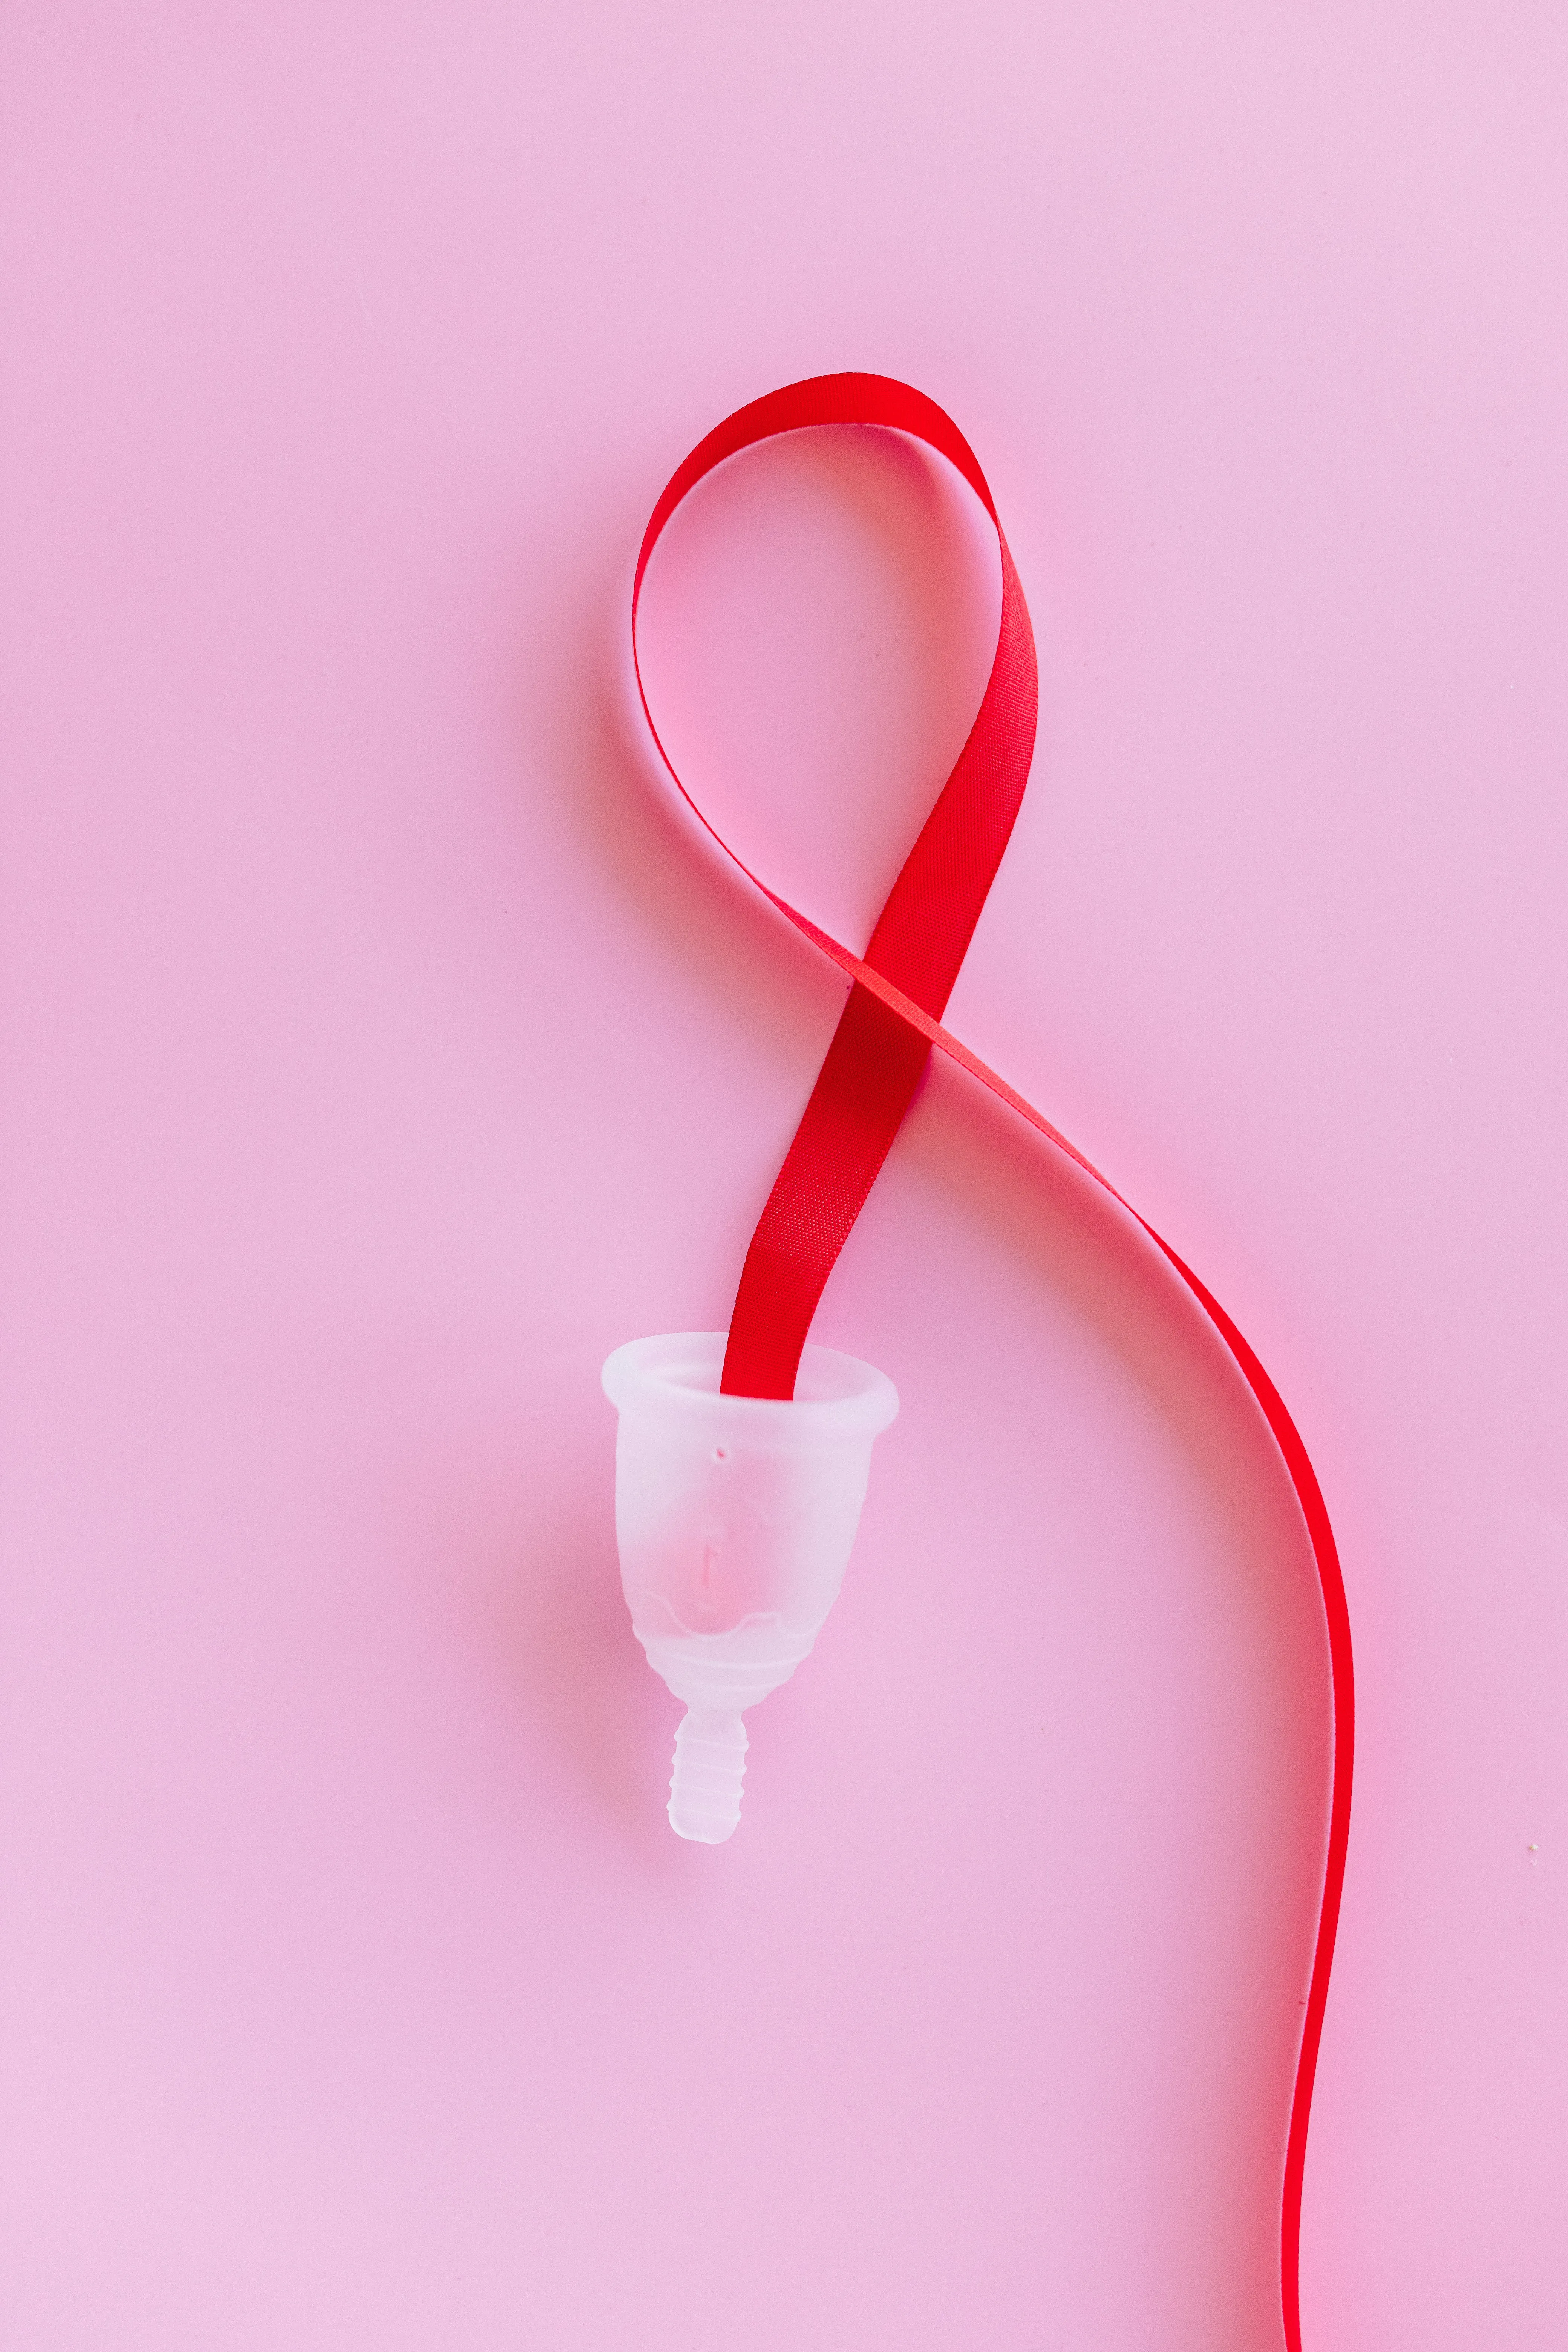 a menstrual cup